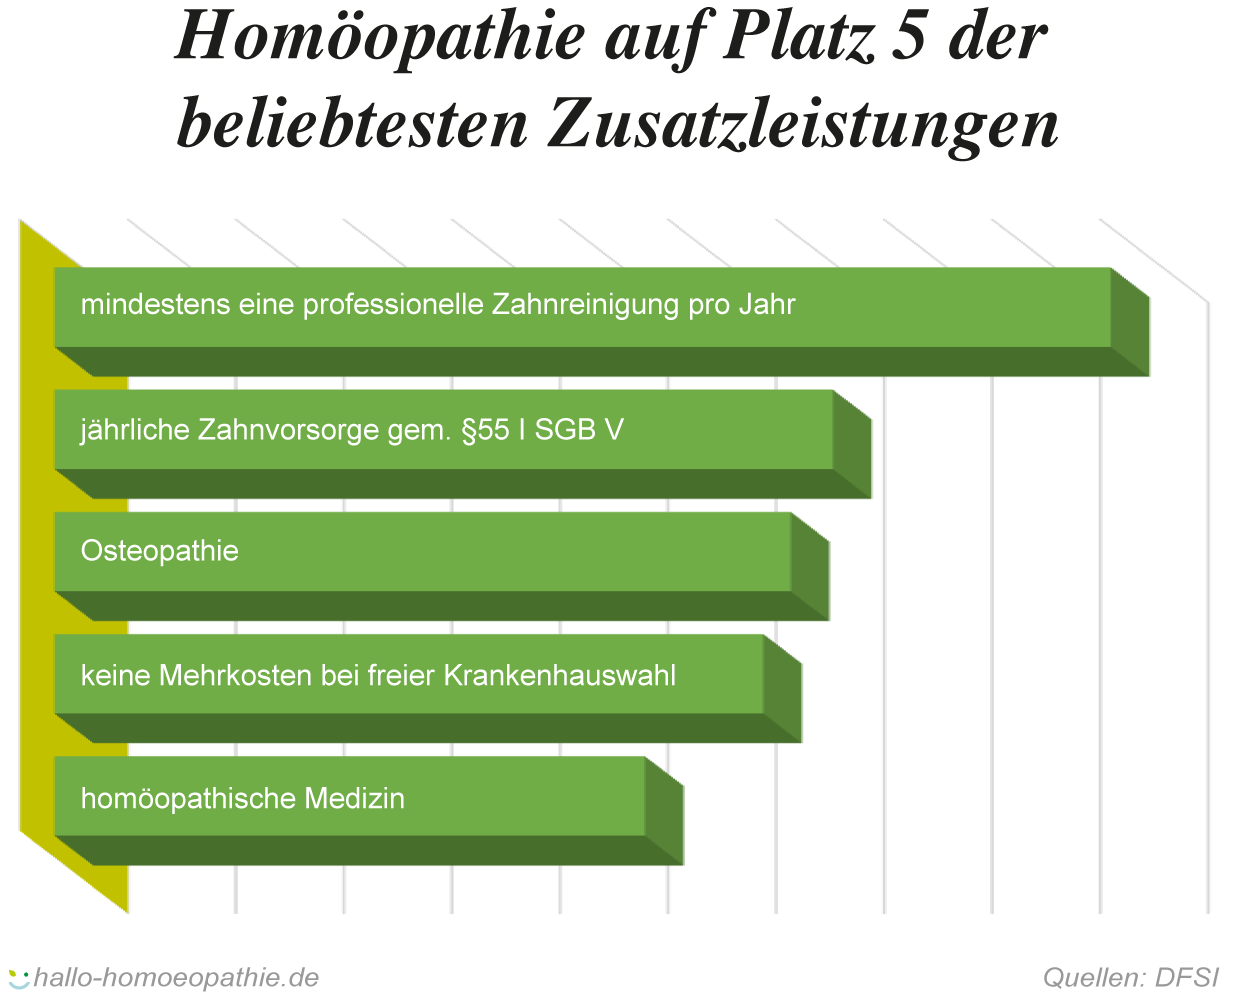 Homöopathie: In den Top5 Zusatzleistungen